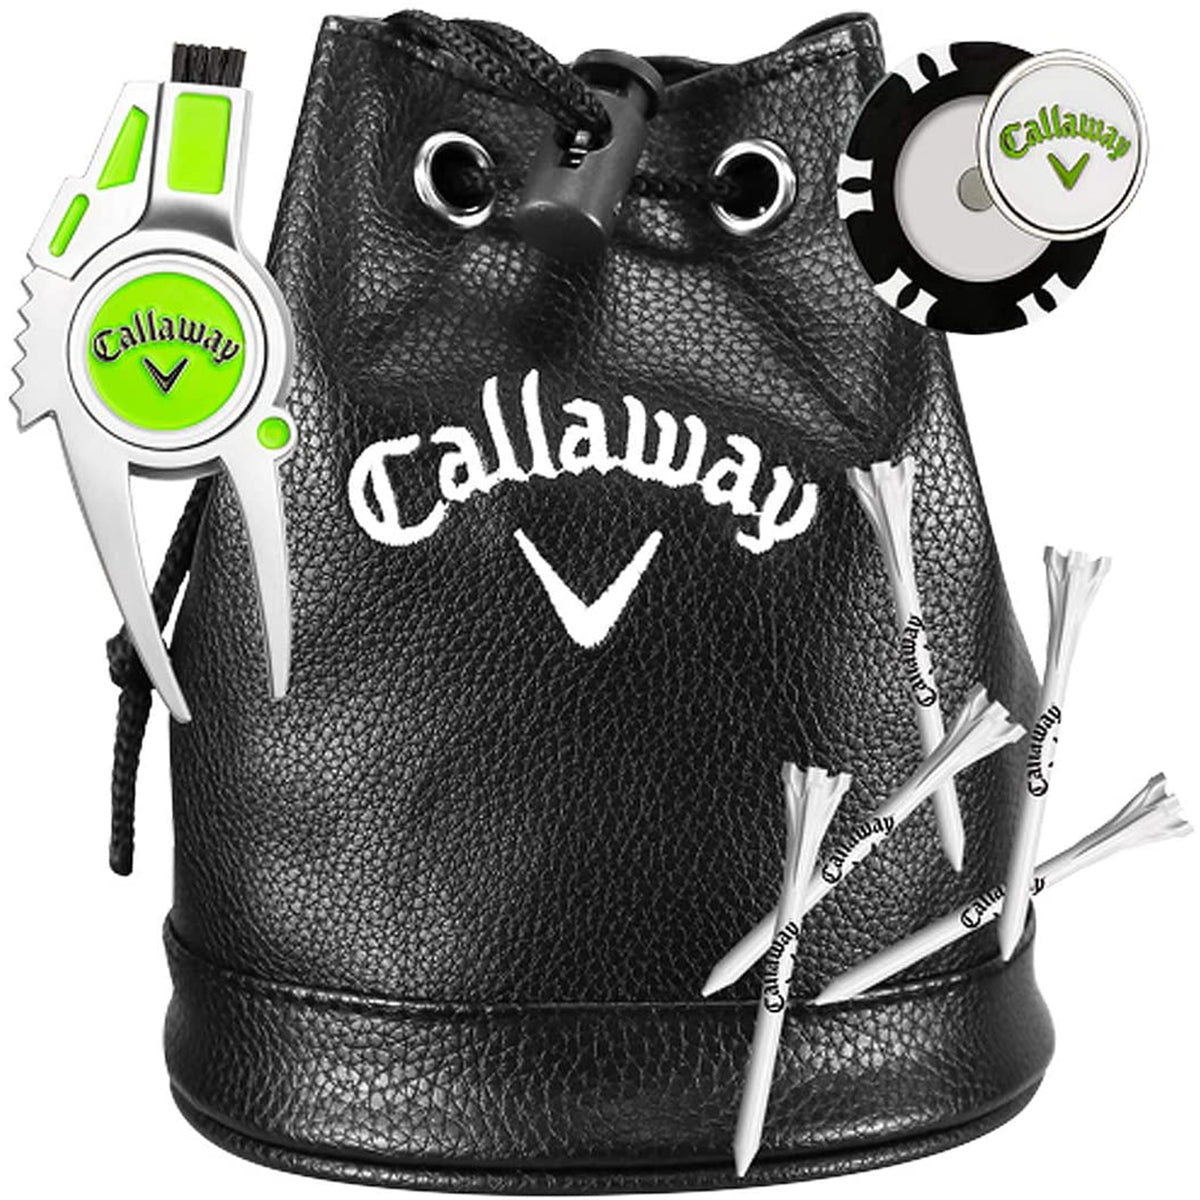 Callaway VIP Golf Gift Set Izzo